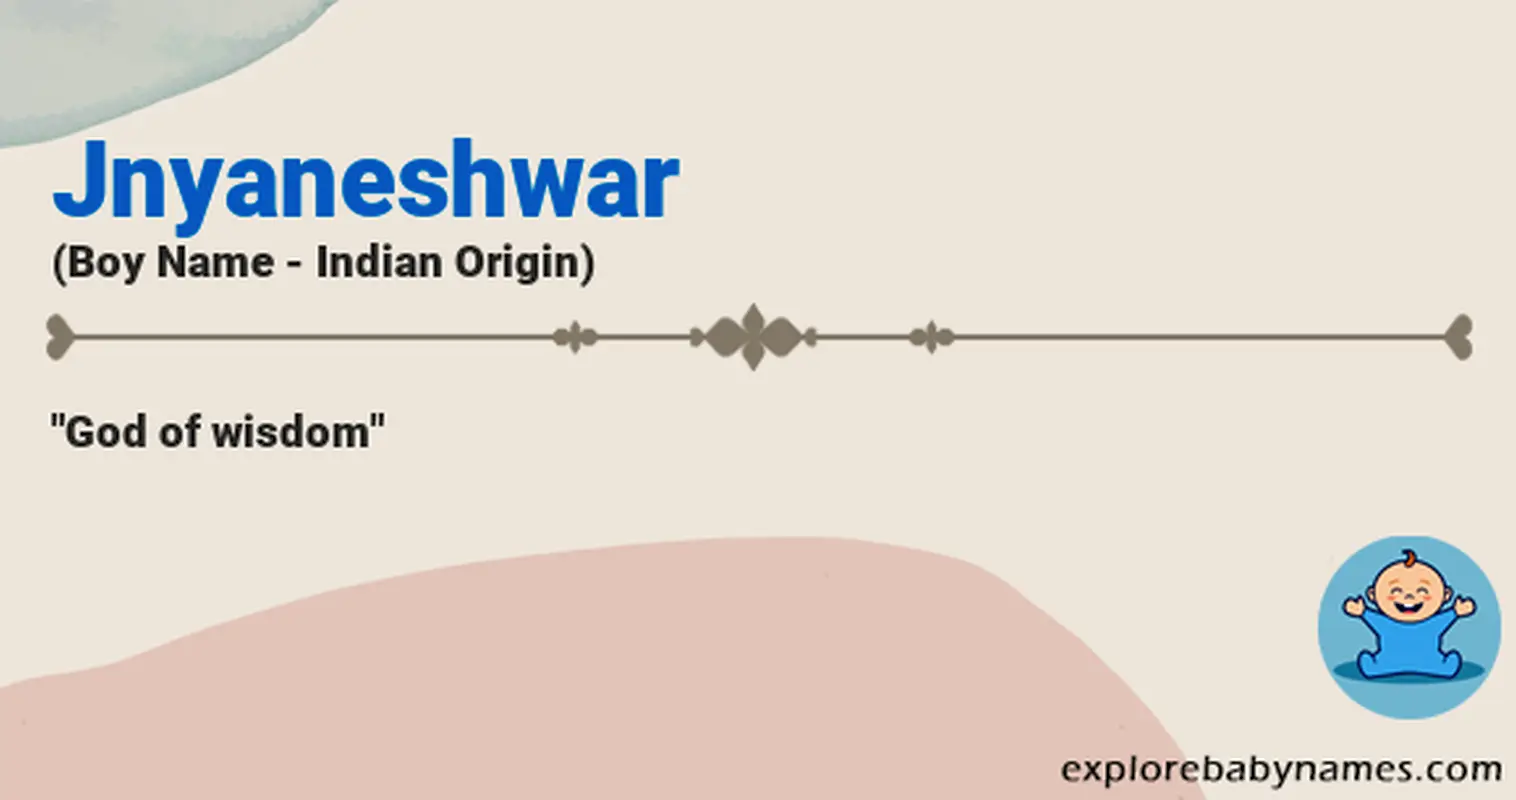 Meaning of Jnyaneshwar